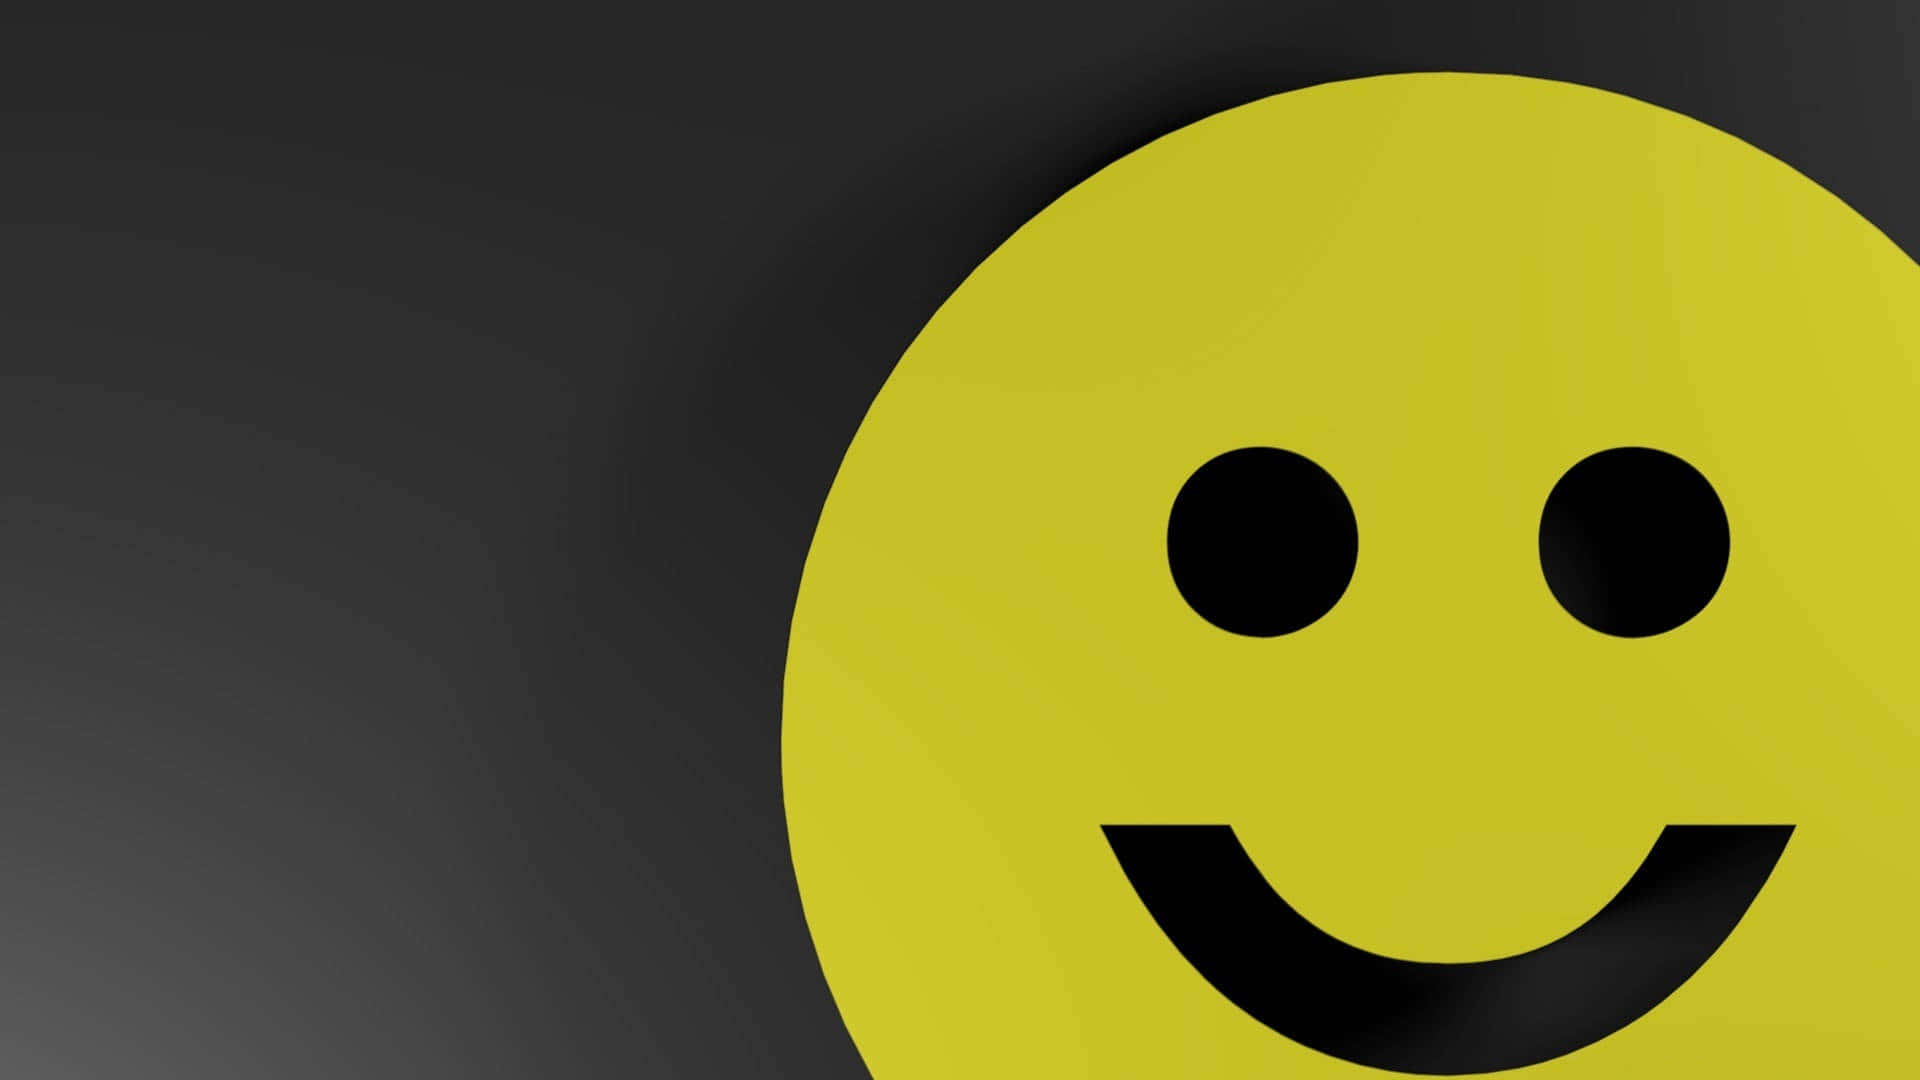 Bright Yellow Smile Emoji Brightening Up The Corner